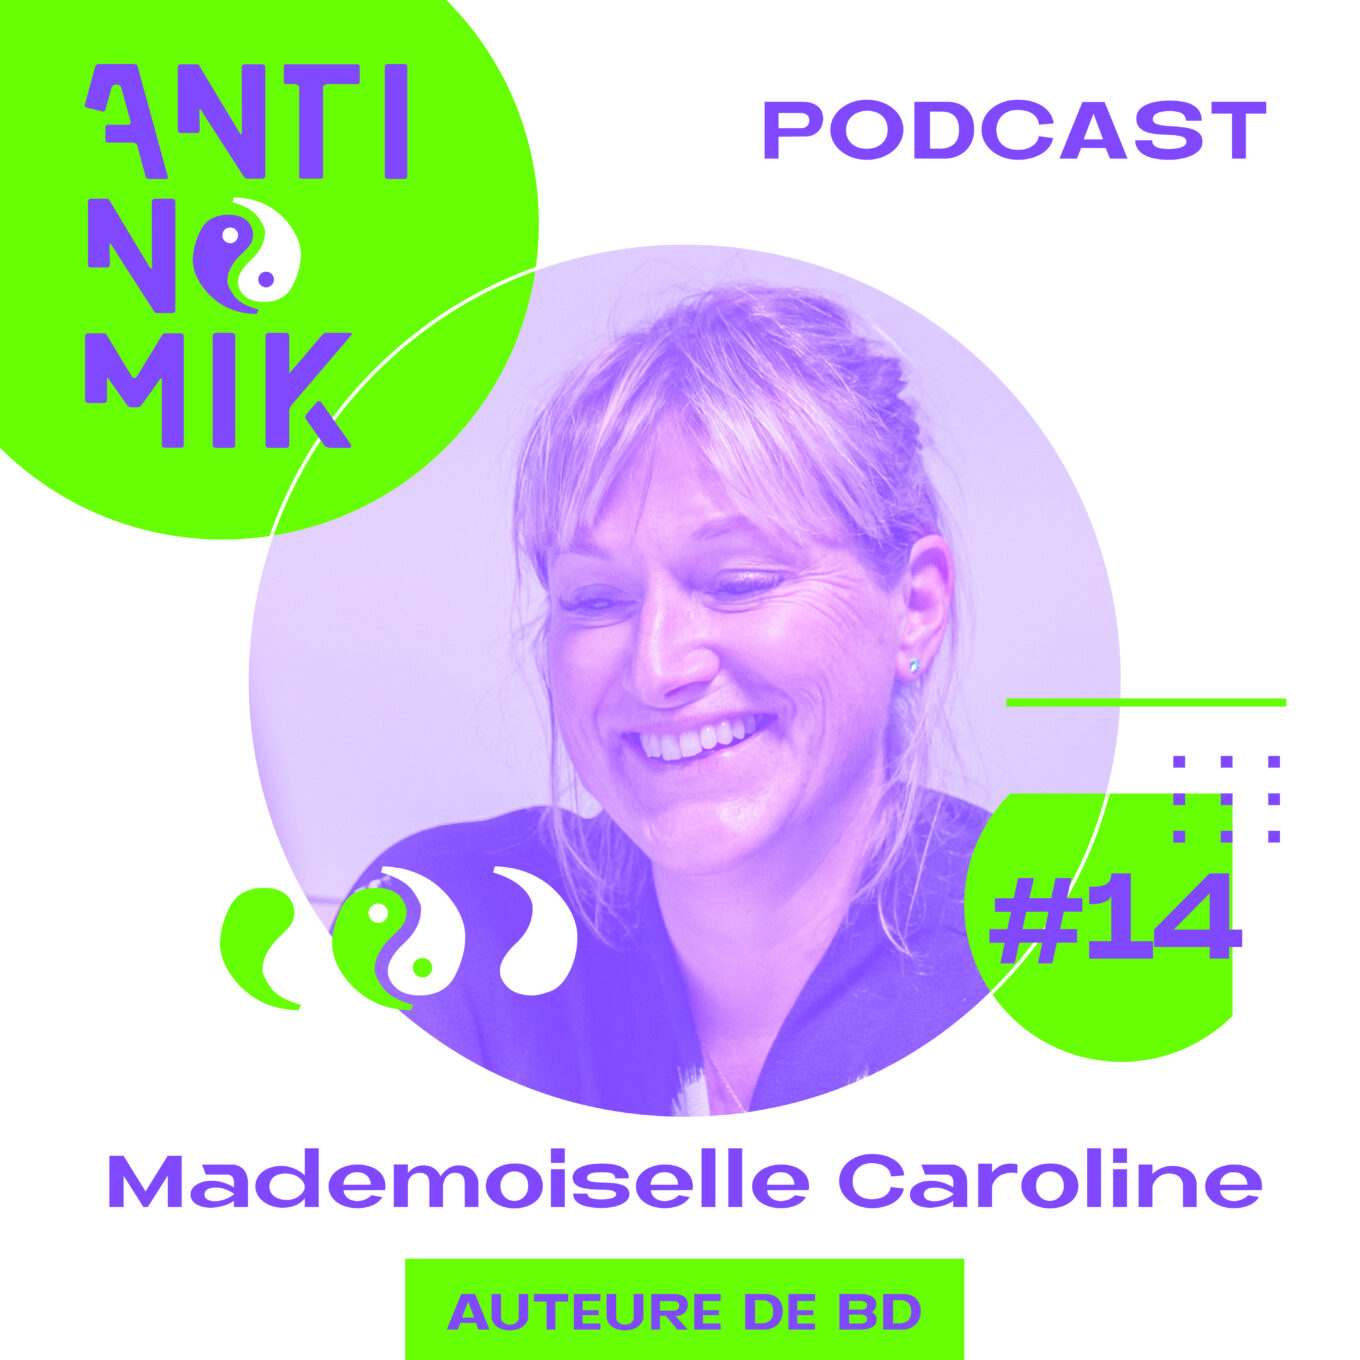 Mademoiselle Caroline – Auteure de BD - Mobile